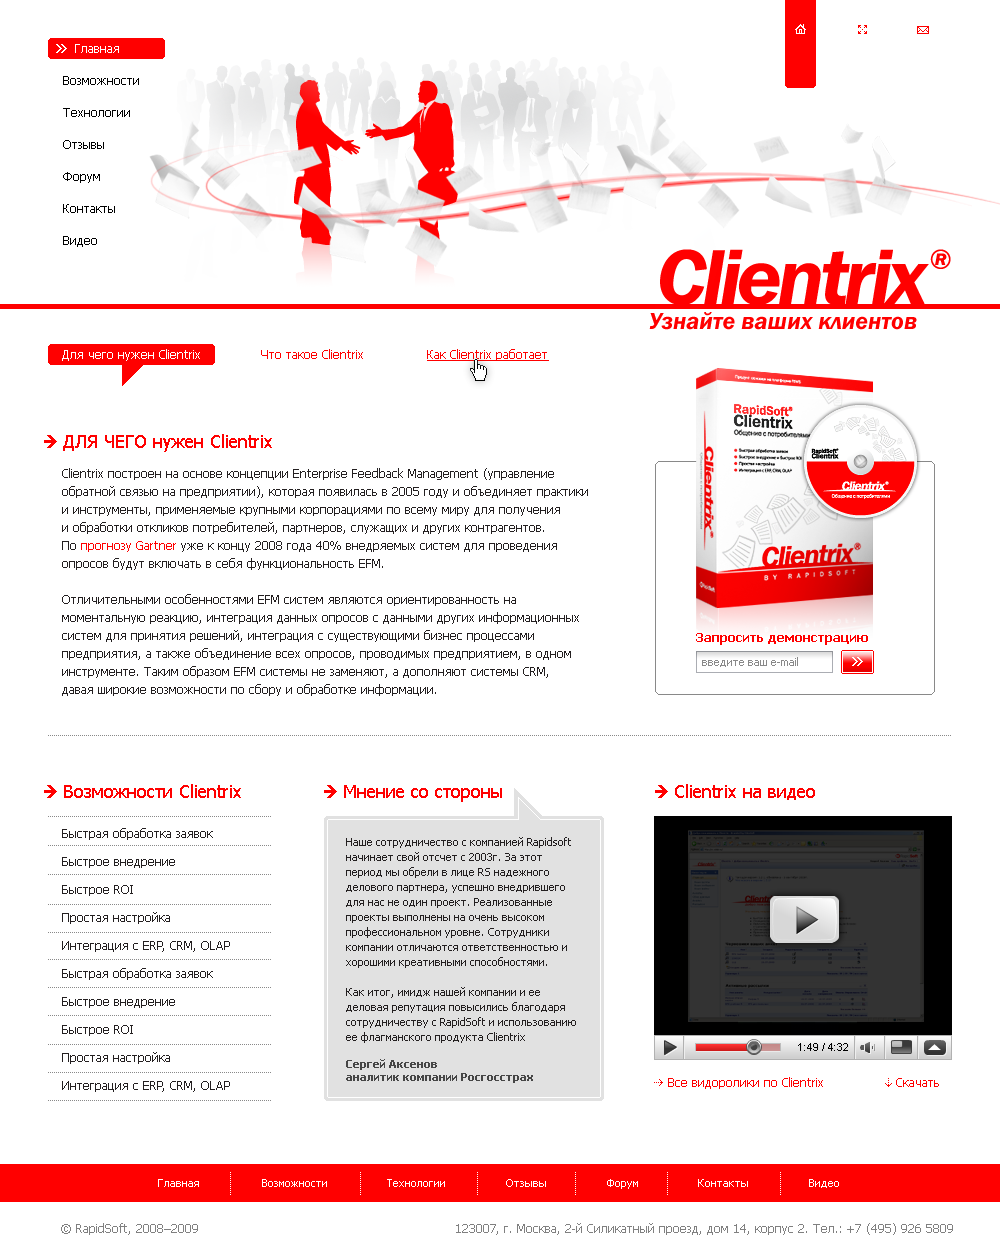 Веб-сайт Clientrix, версия 1